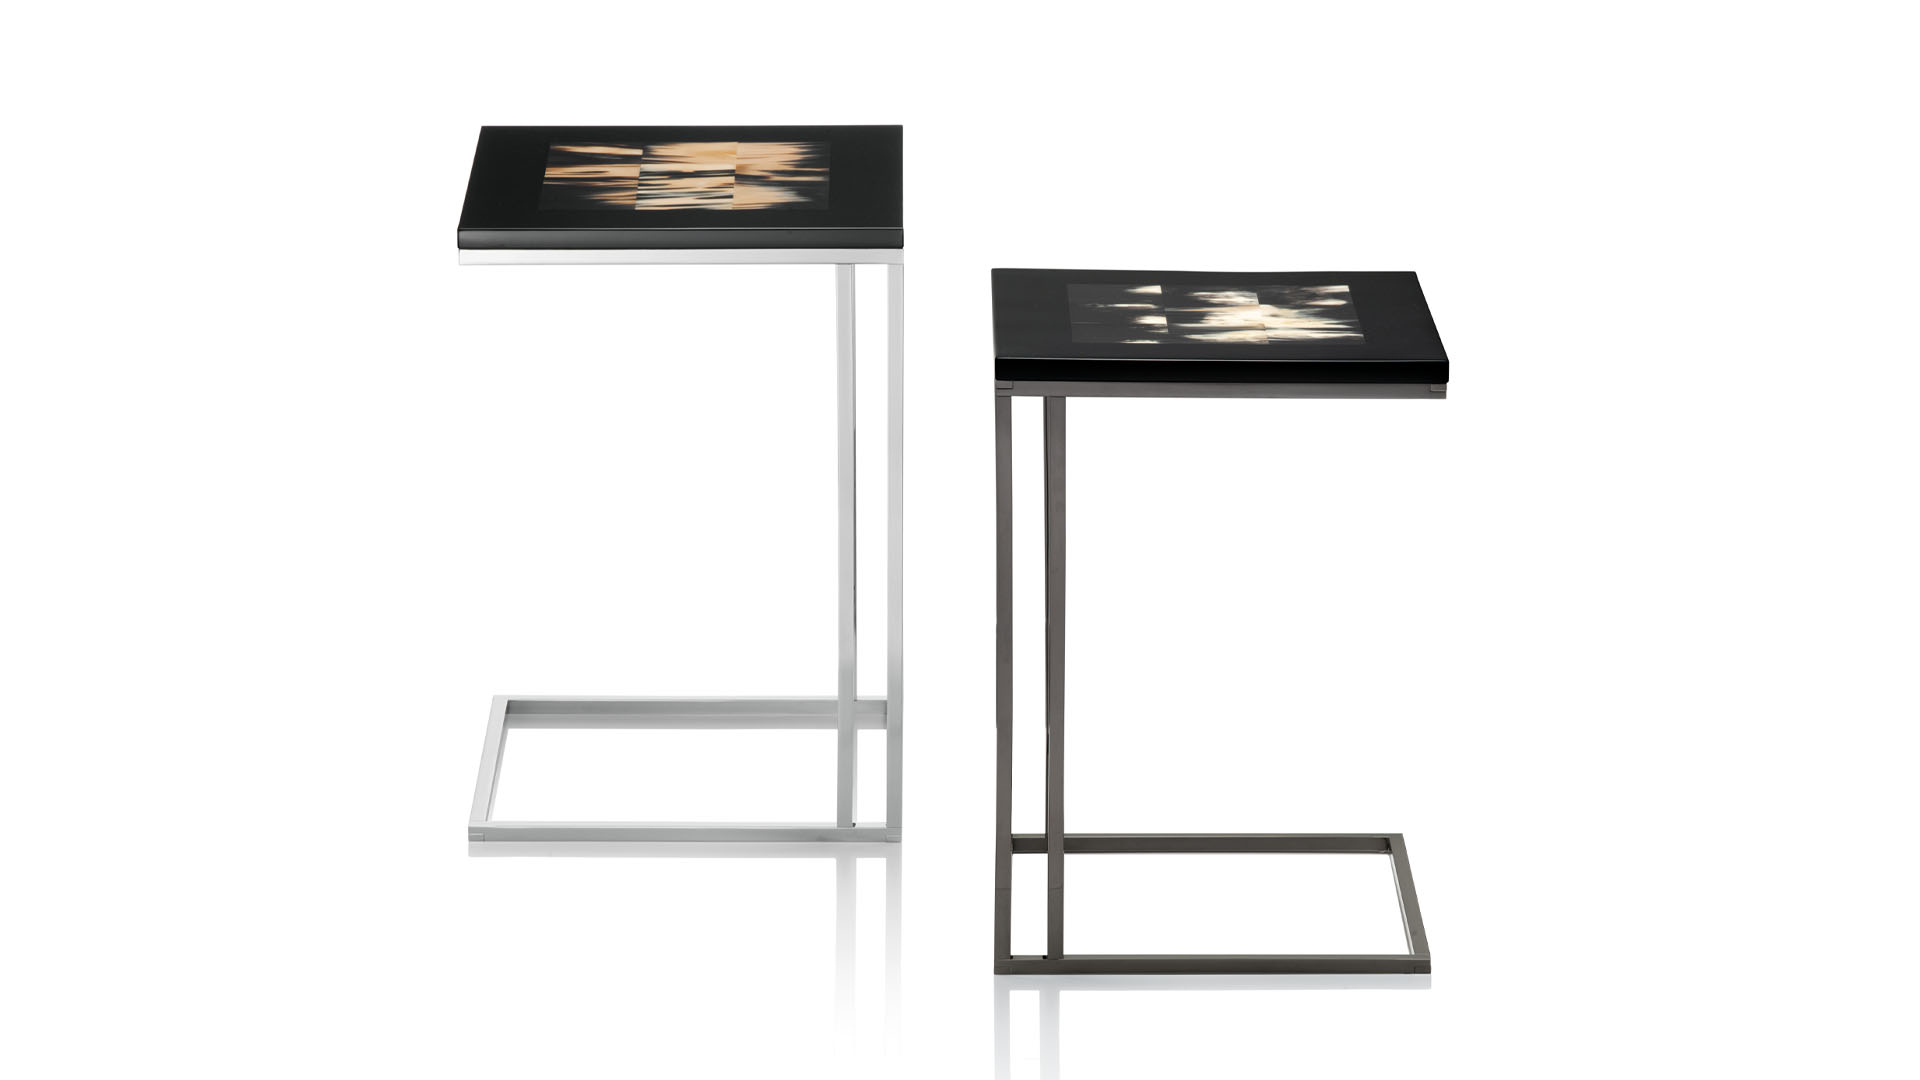 Tavoli e consolle - Eric tavolino in corno e legno laccato nero mod. 1325, 2305 - copertina - Arcahorn